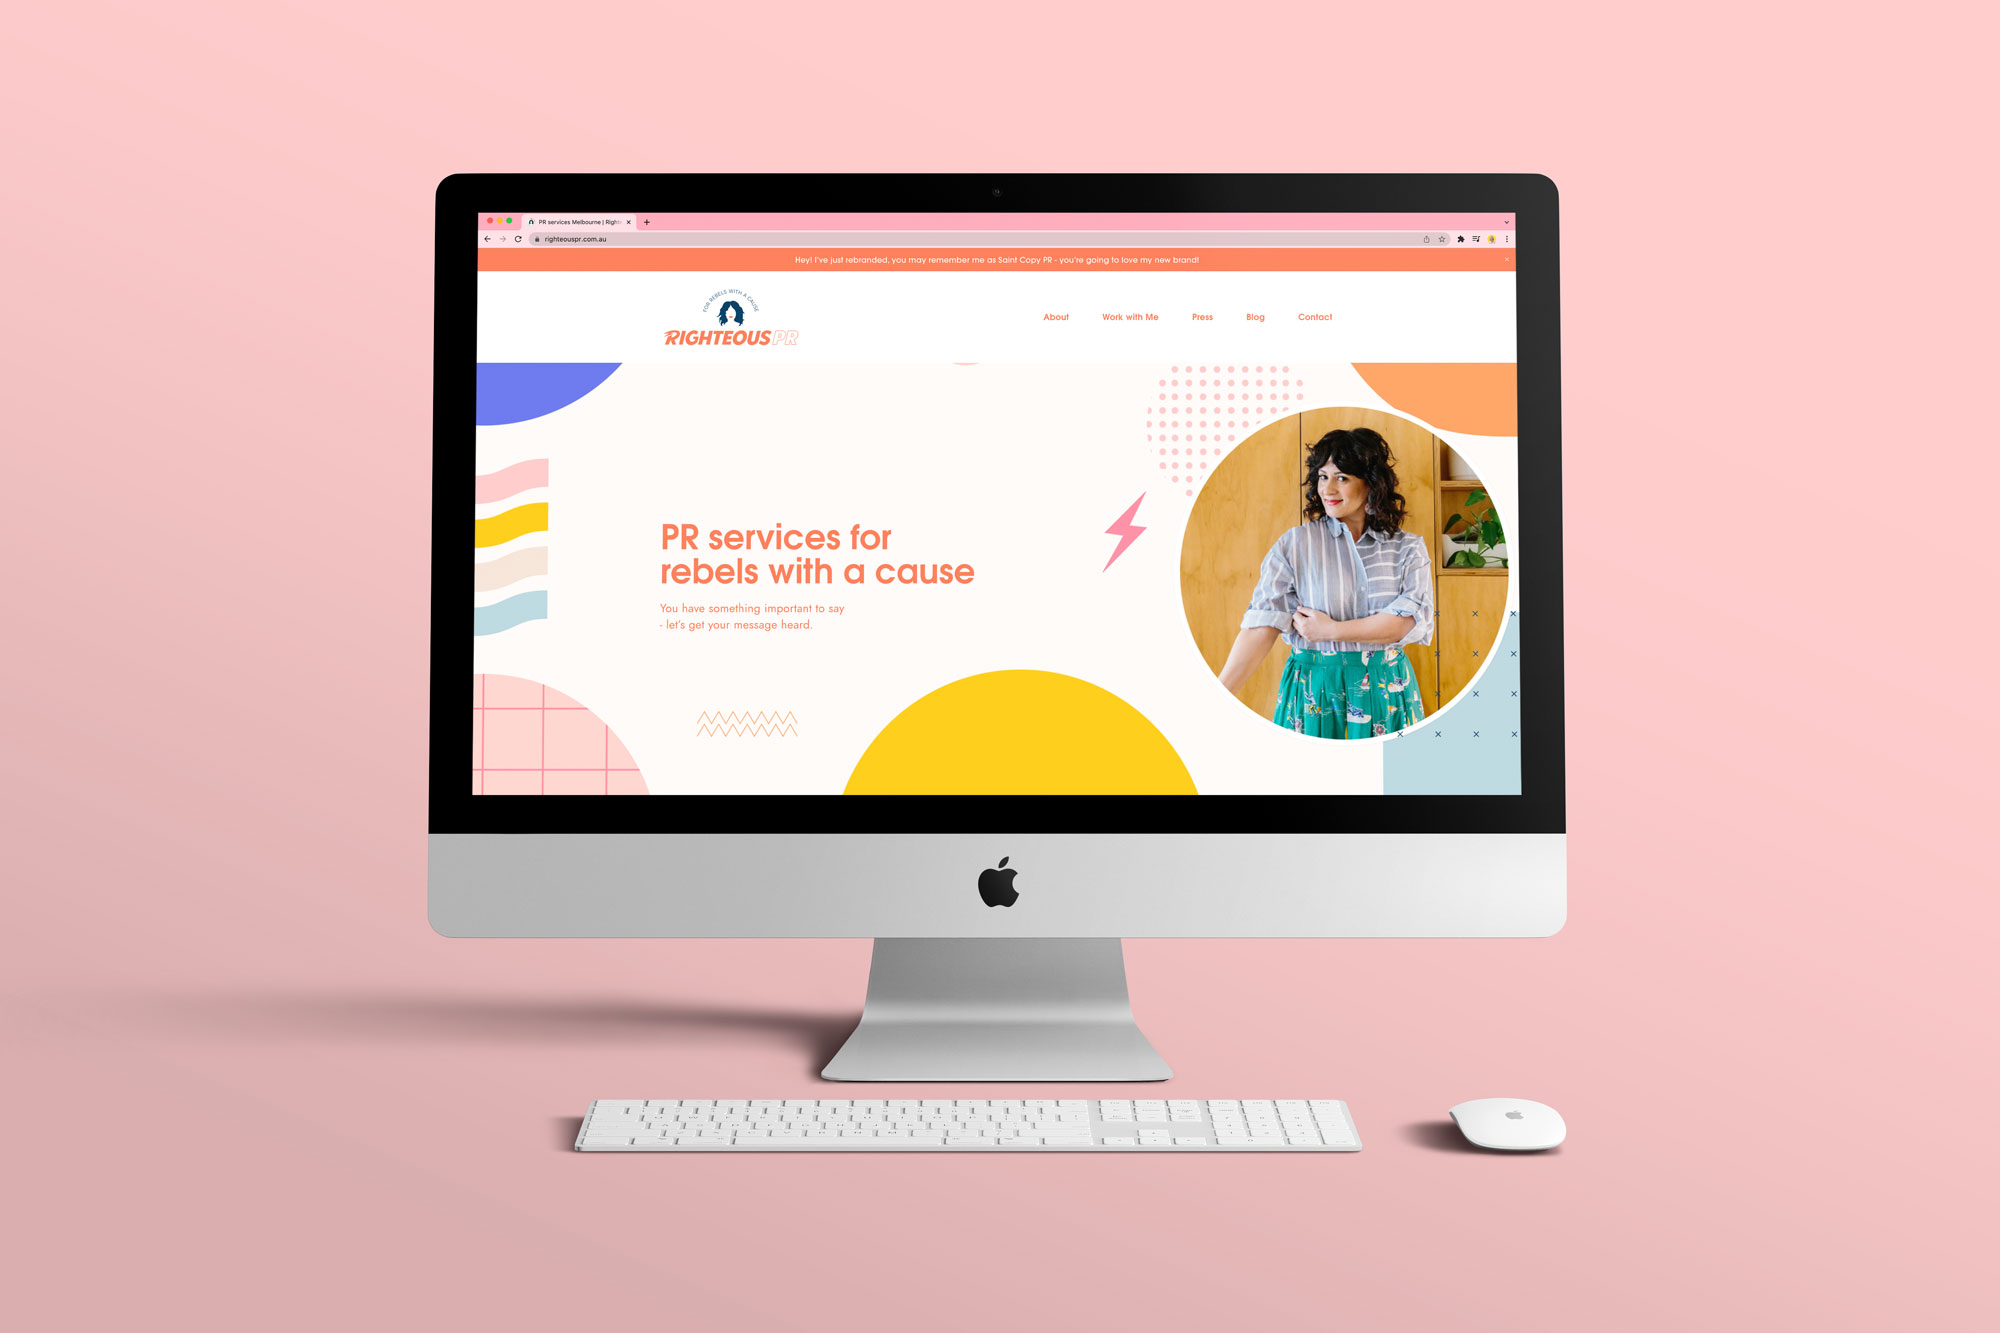 Website Designed for Righteous PR by Crystal Oliver - Brand Designer Melbourne